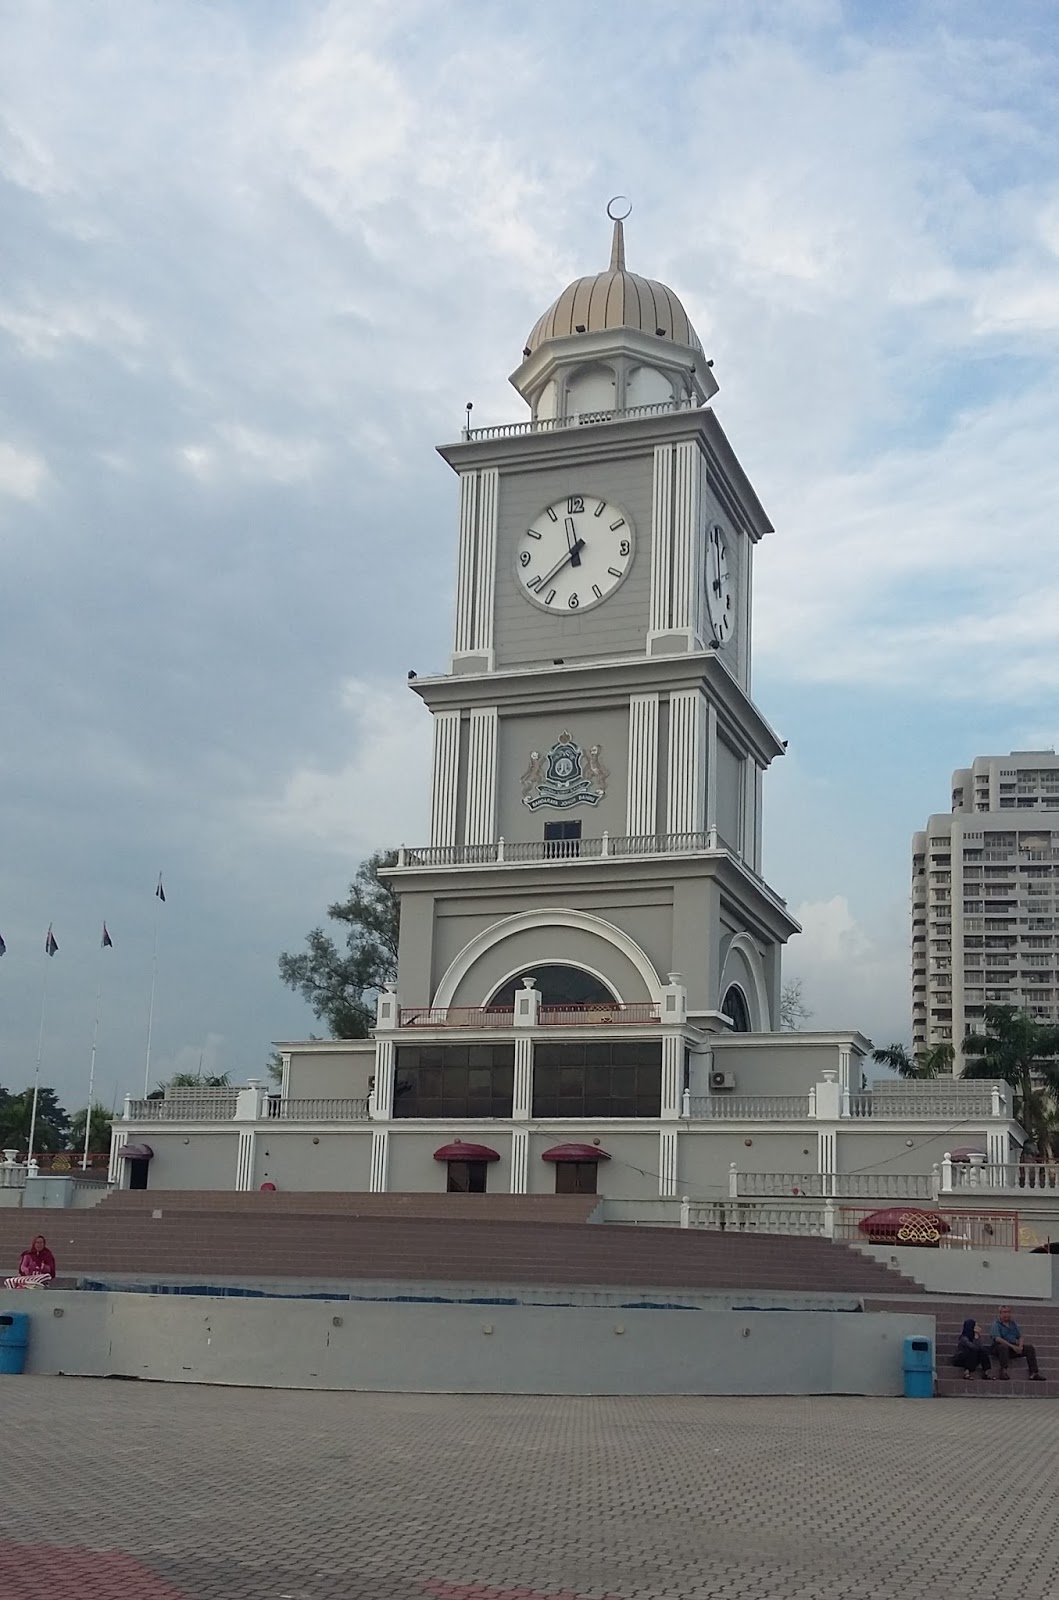 Masterpiece of Johor Bahru: DATARAN BANDARAYA JOHOR BAHRU